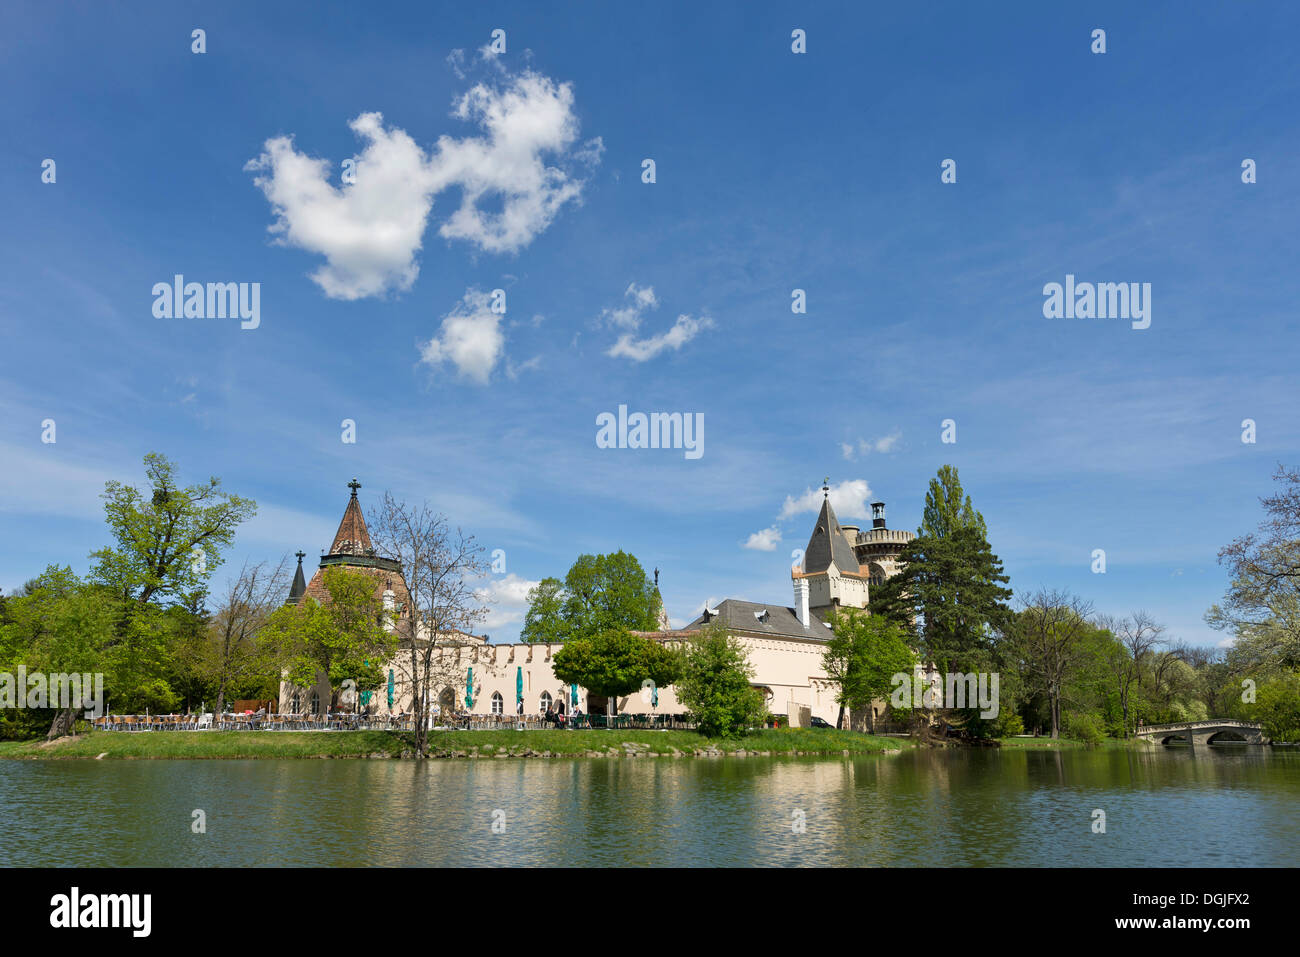 Schlossteich pond with Franzensburg Castle, Laxenburg, Lower Austria, Austria Stock Photo